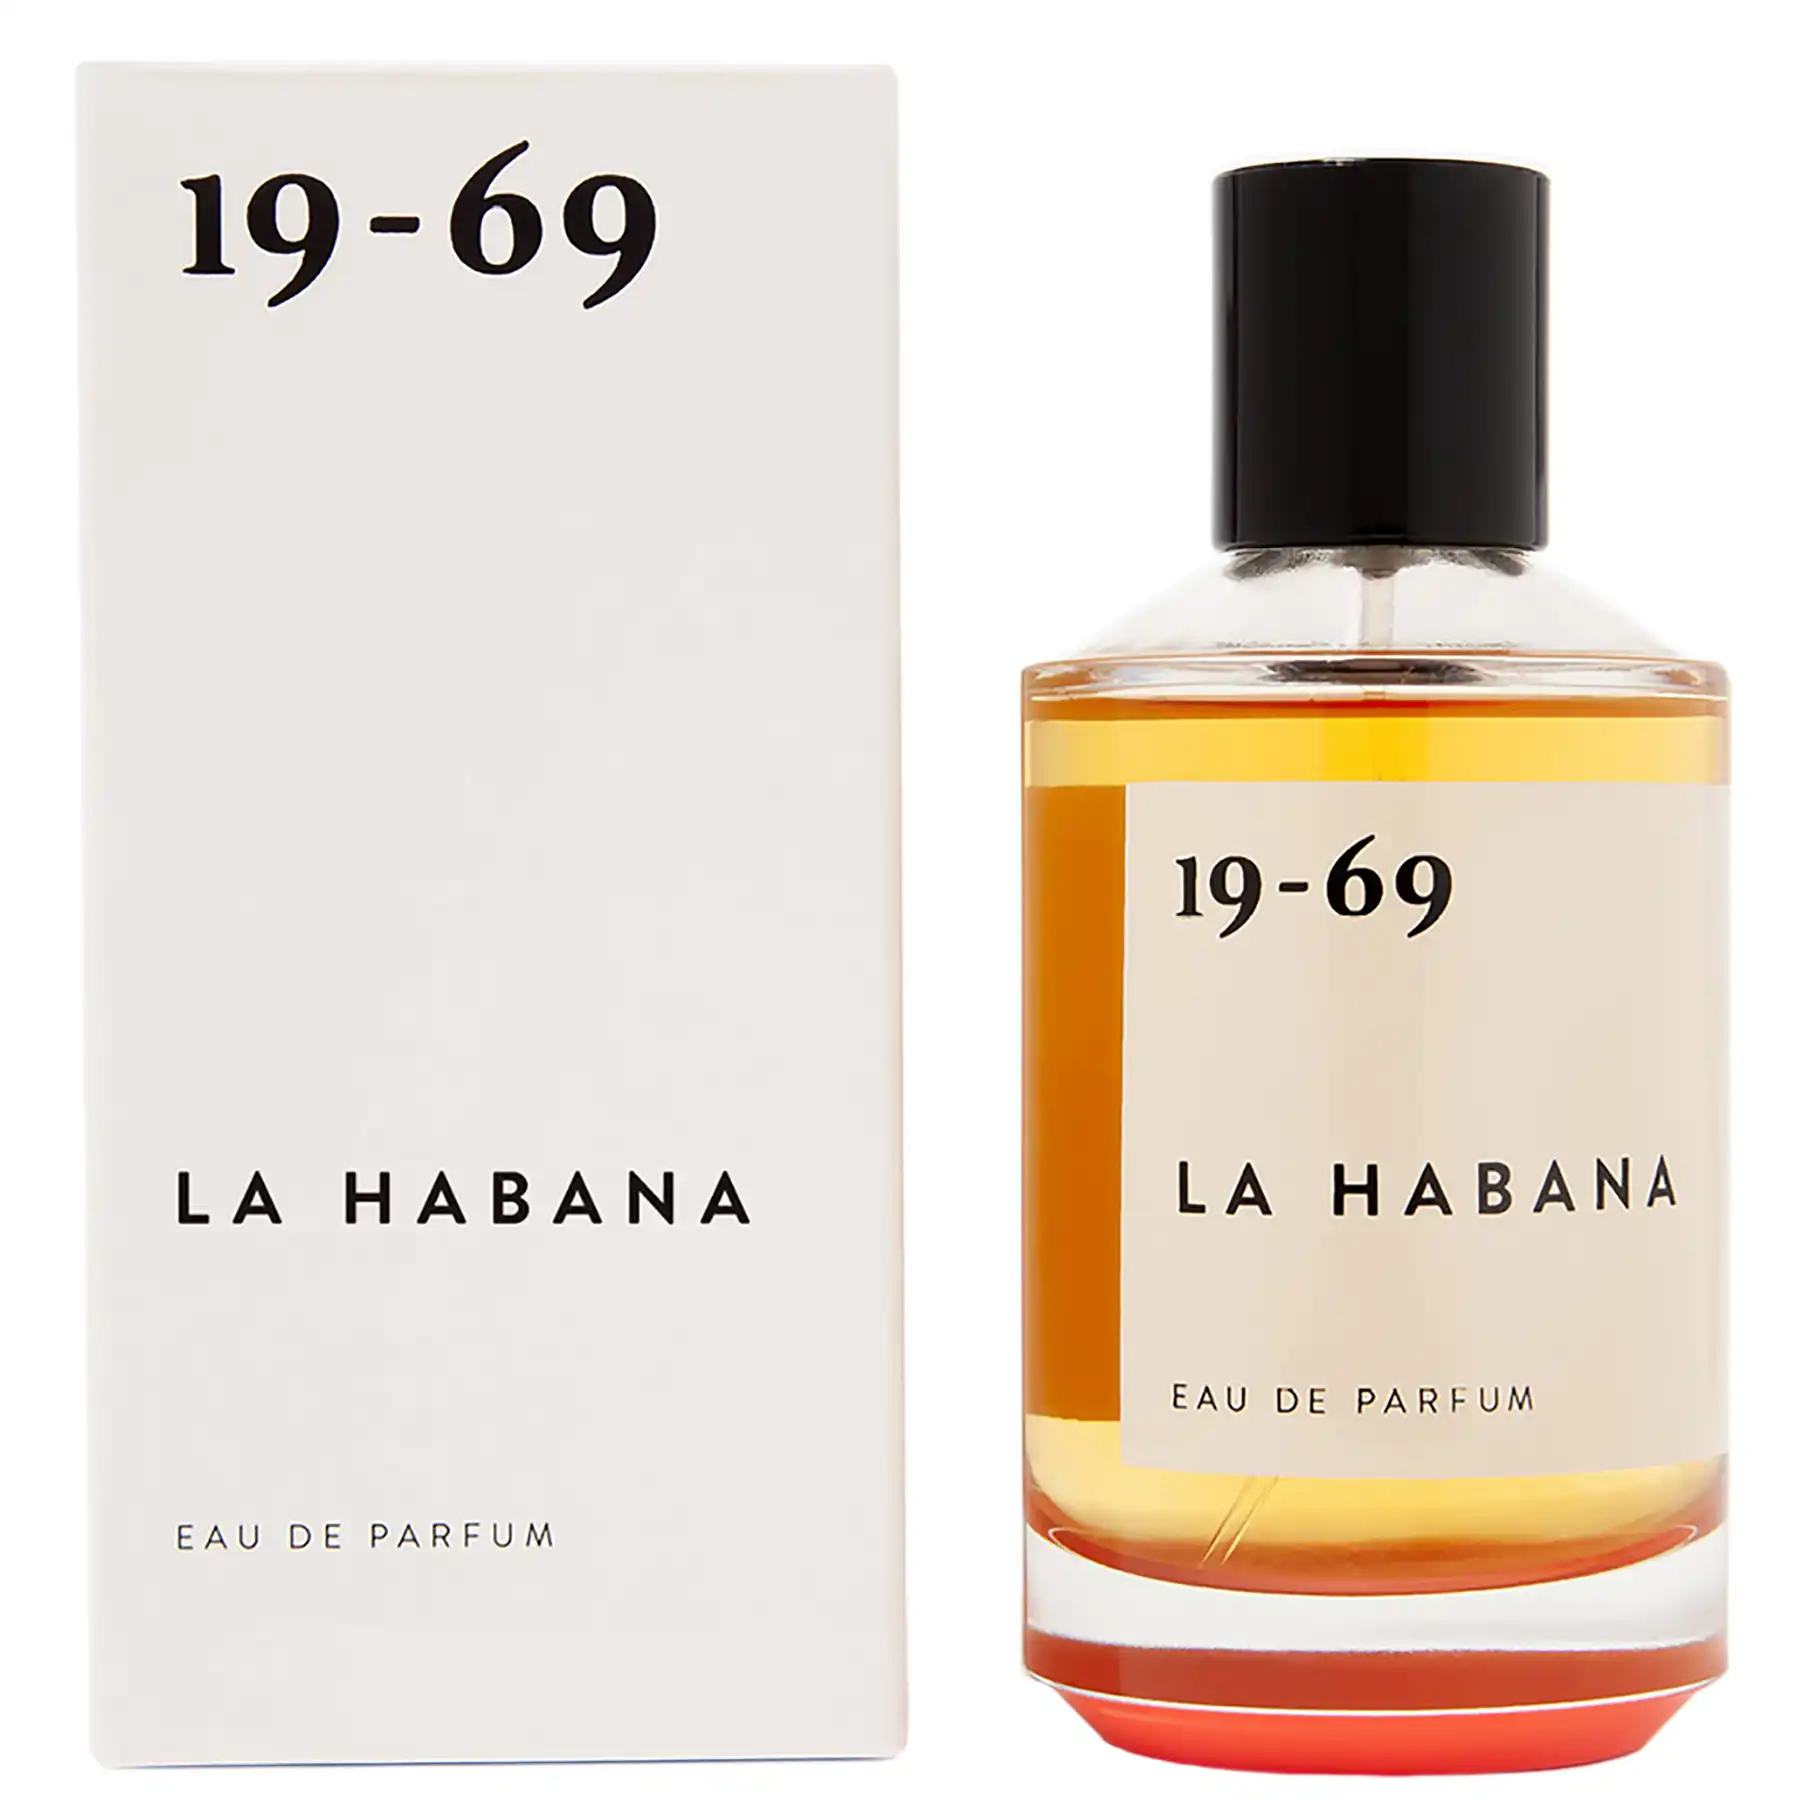 1969 La Habana Perfume